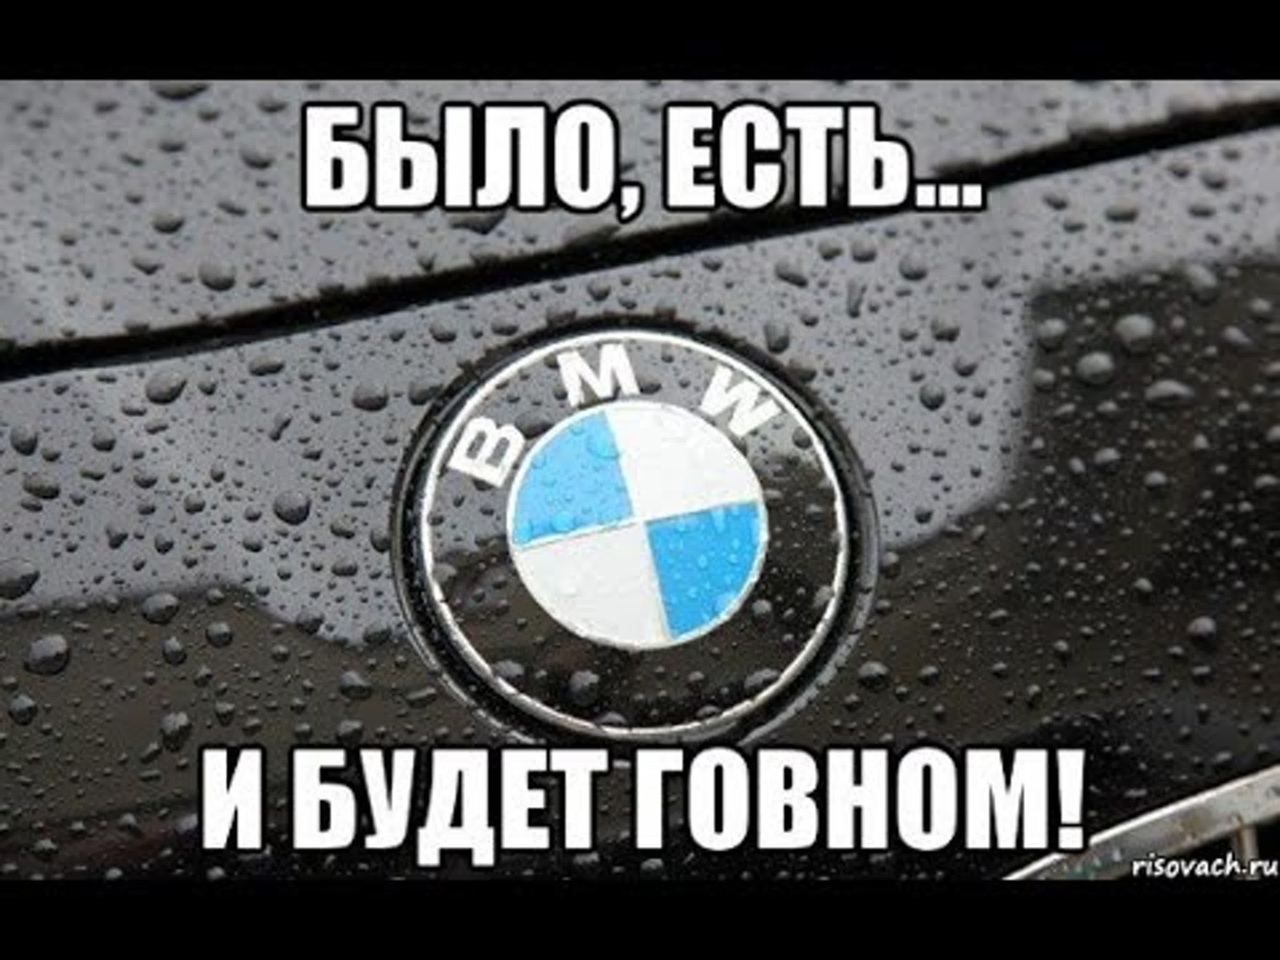 Шутки про бмв. Приколы про БМВ. Прикольные картинки БМВ. BMW надпись. Мемы про БМВ.